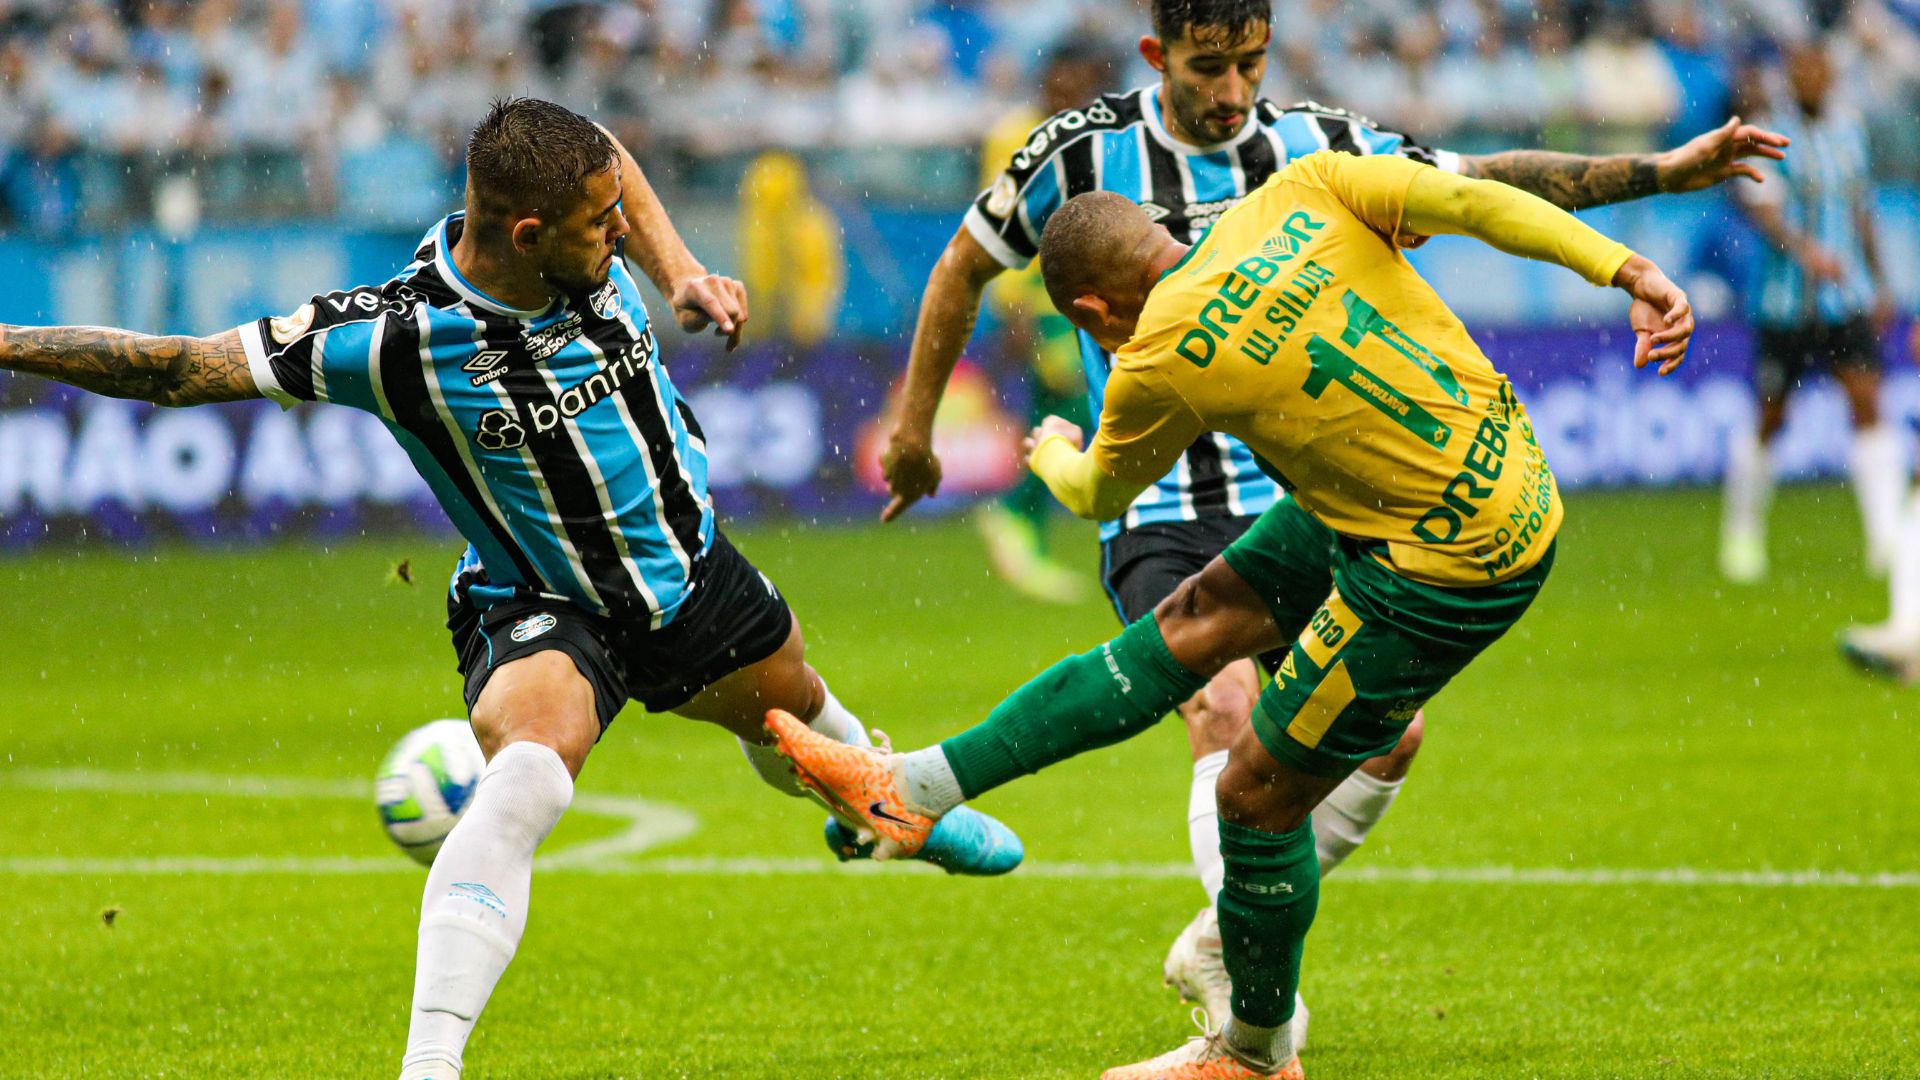 Atlético vence, dispara na liderança e afunda Grêmio na crise; veja os gols